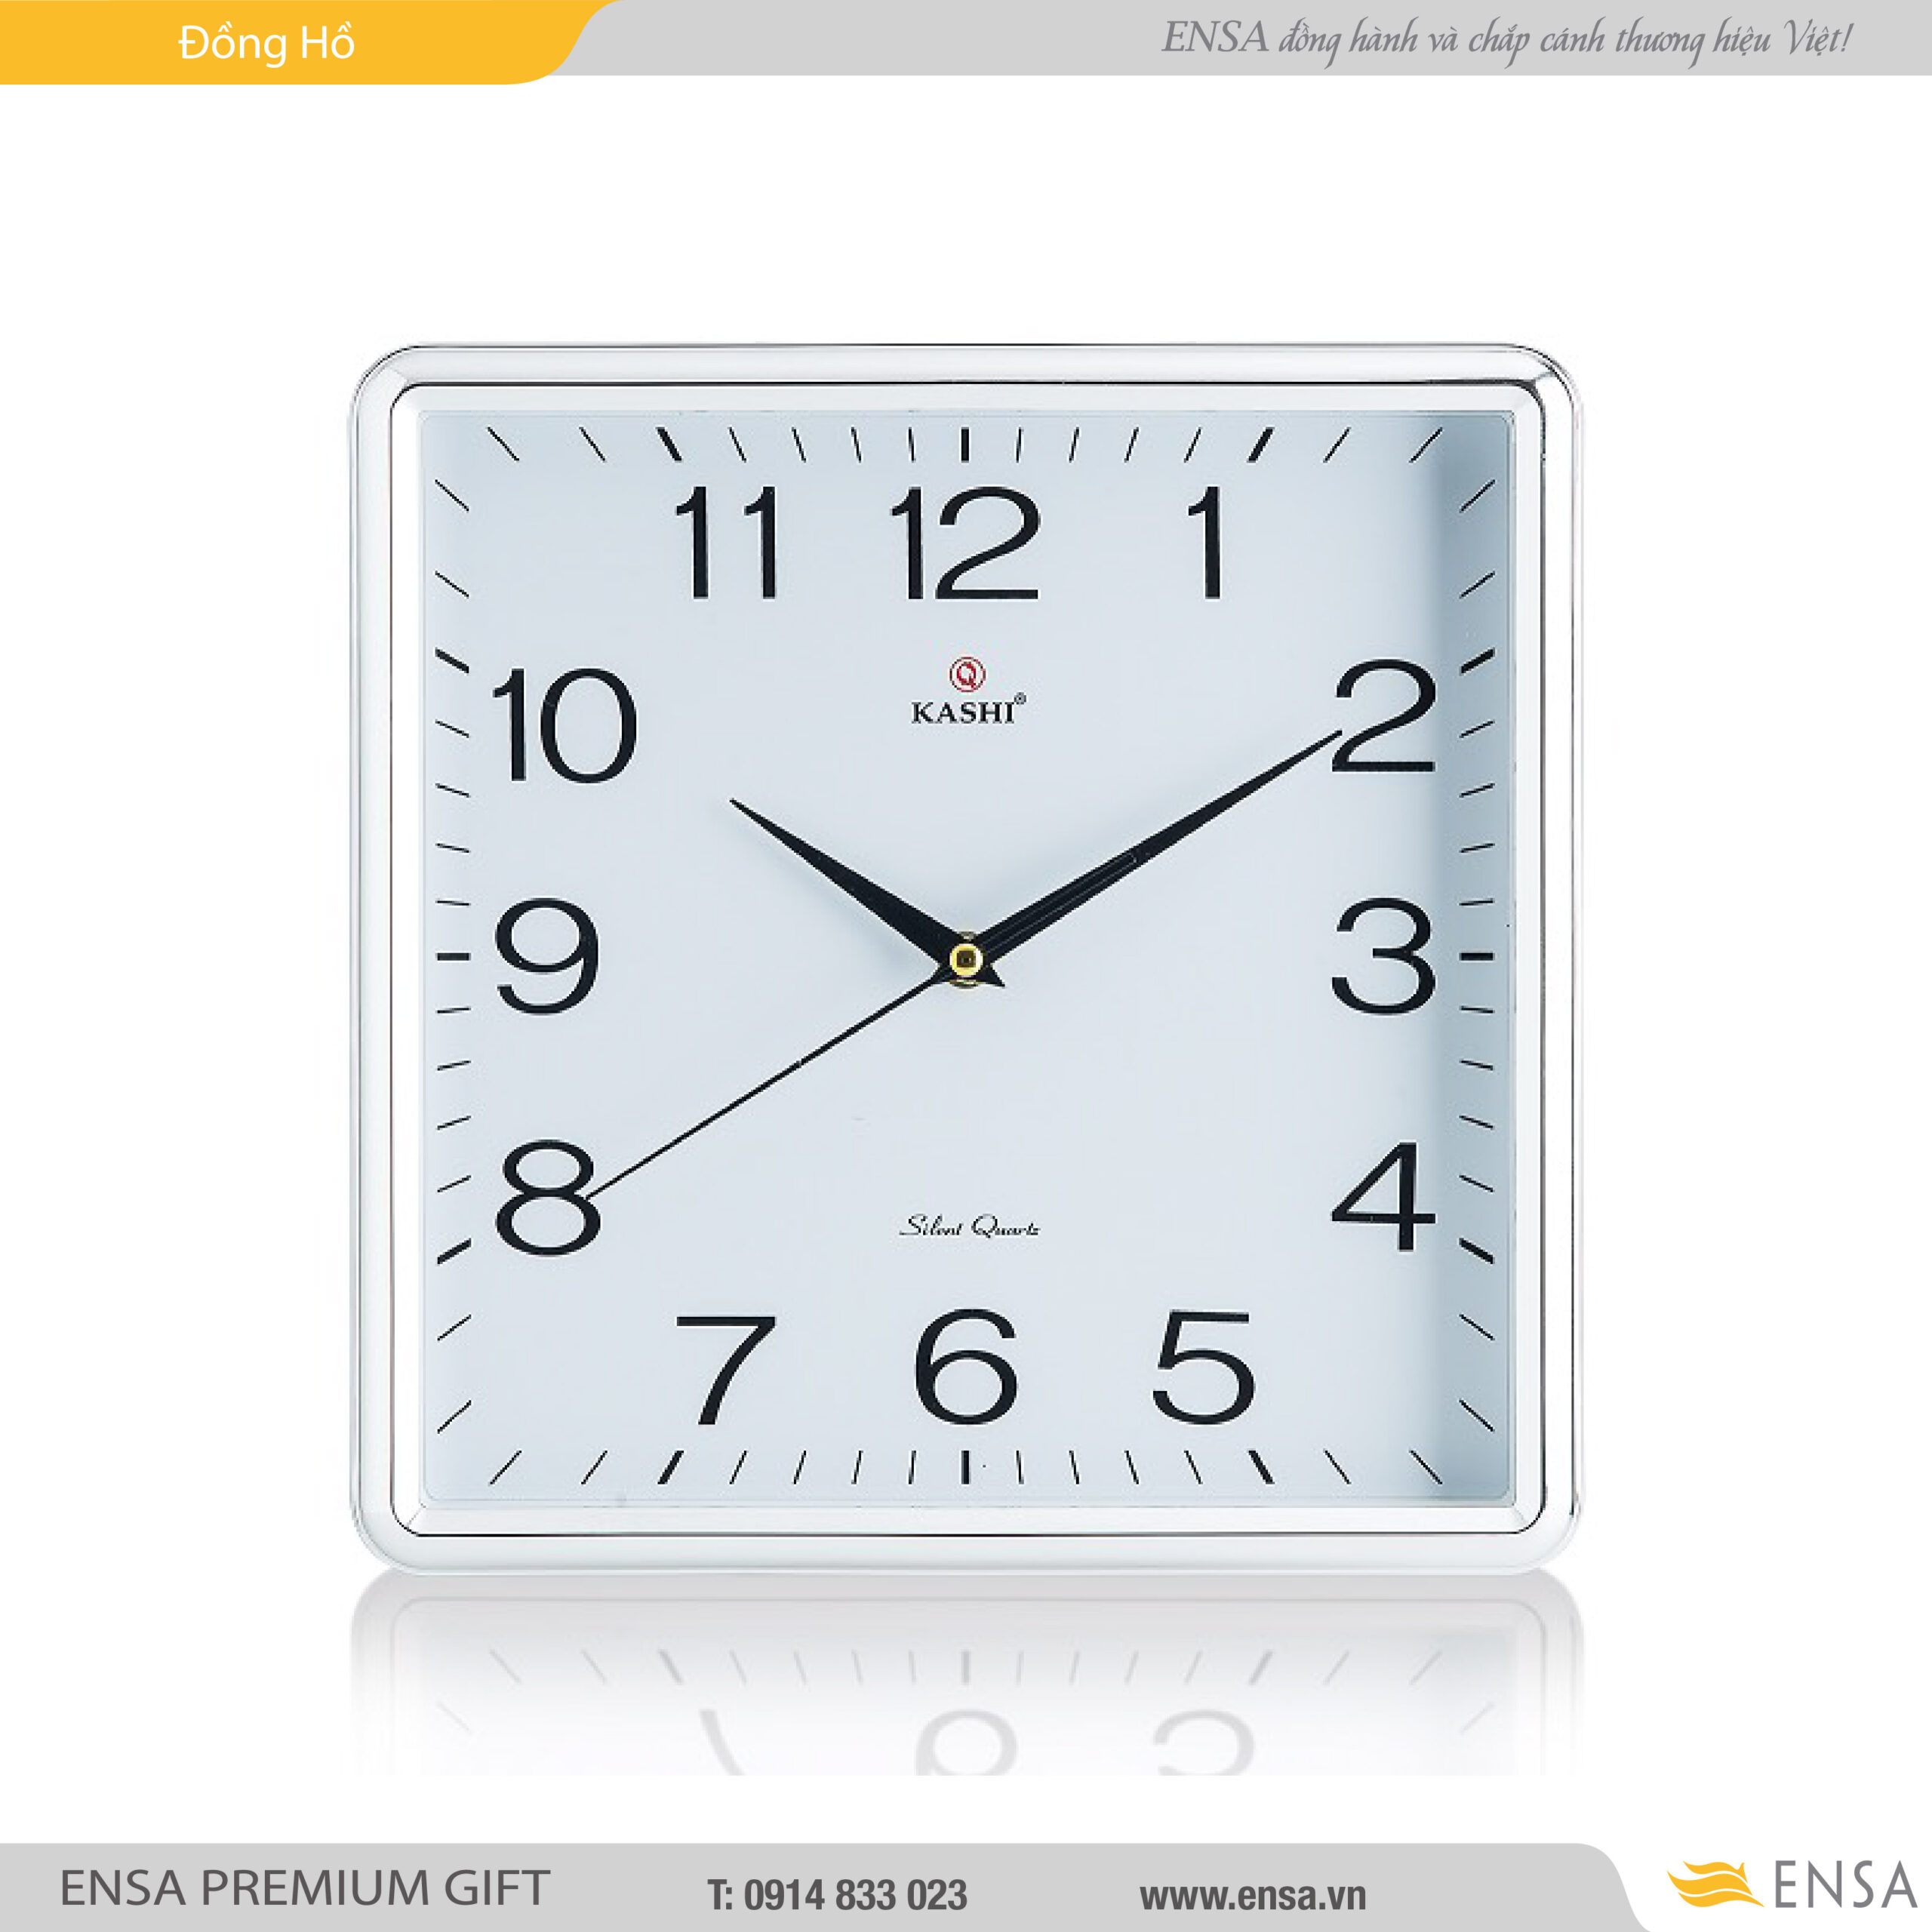 Đồng hồ nhựa treo tường mẫu 14 mã 06 - QUÀ TẶNG DOANH NGHIỆP ENSA